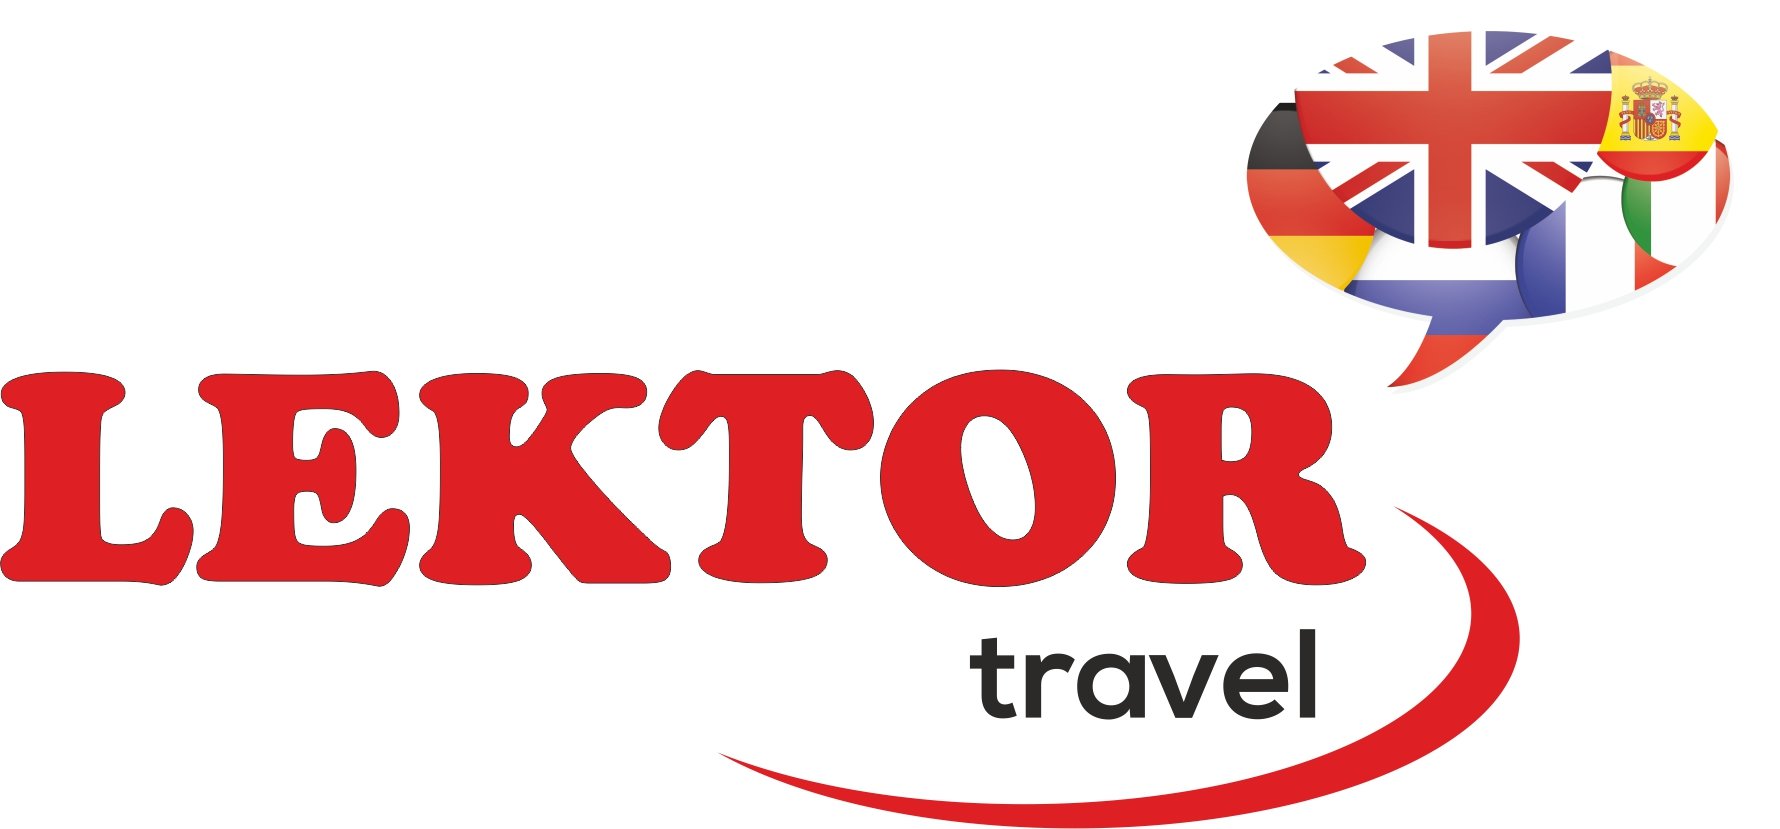 Lektor travel - Kopia